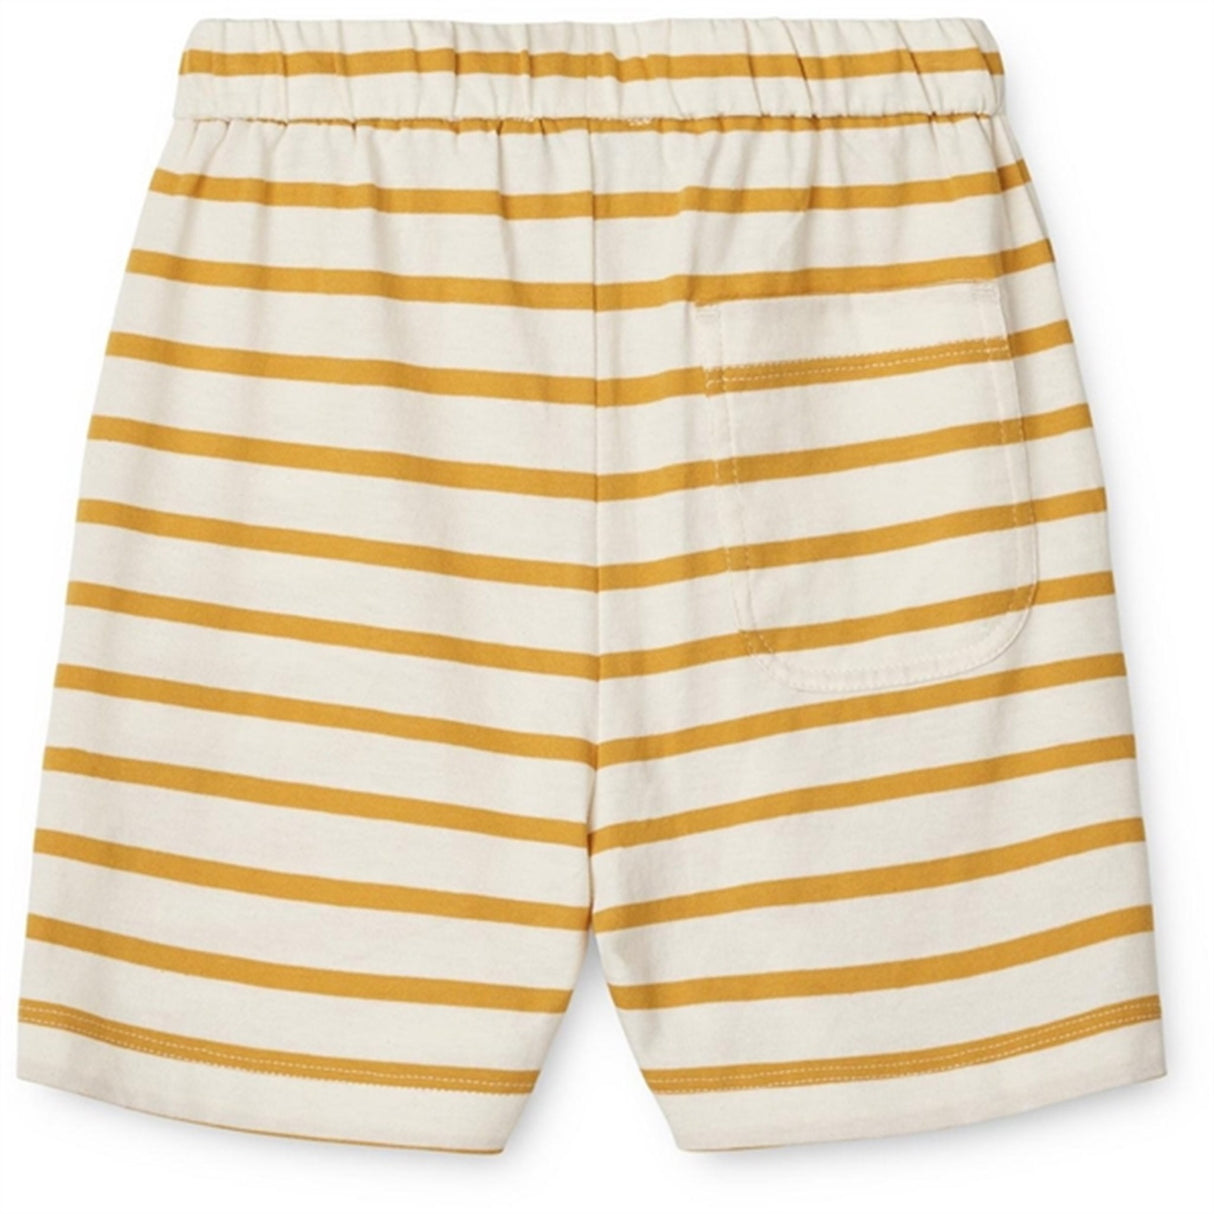 Liewood Y/D Stripe Creme De La Creme/Yellow Mellow Bako Stripe Shorts 2